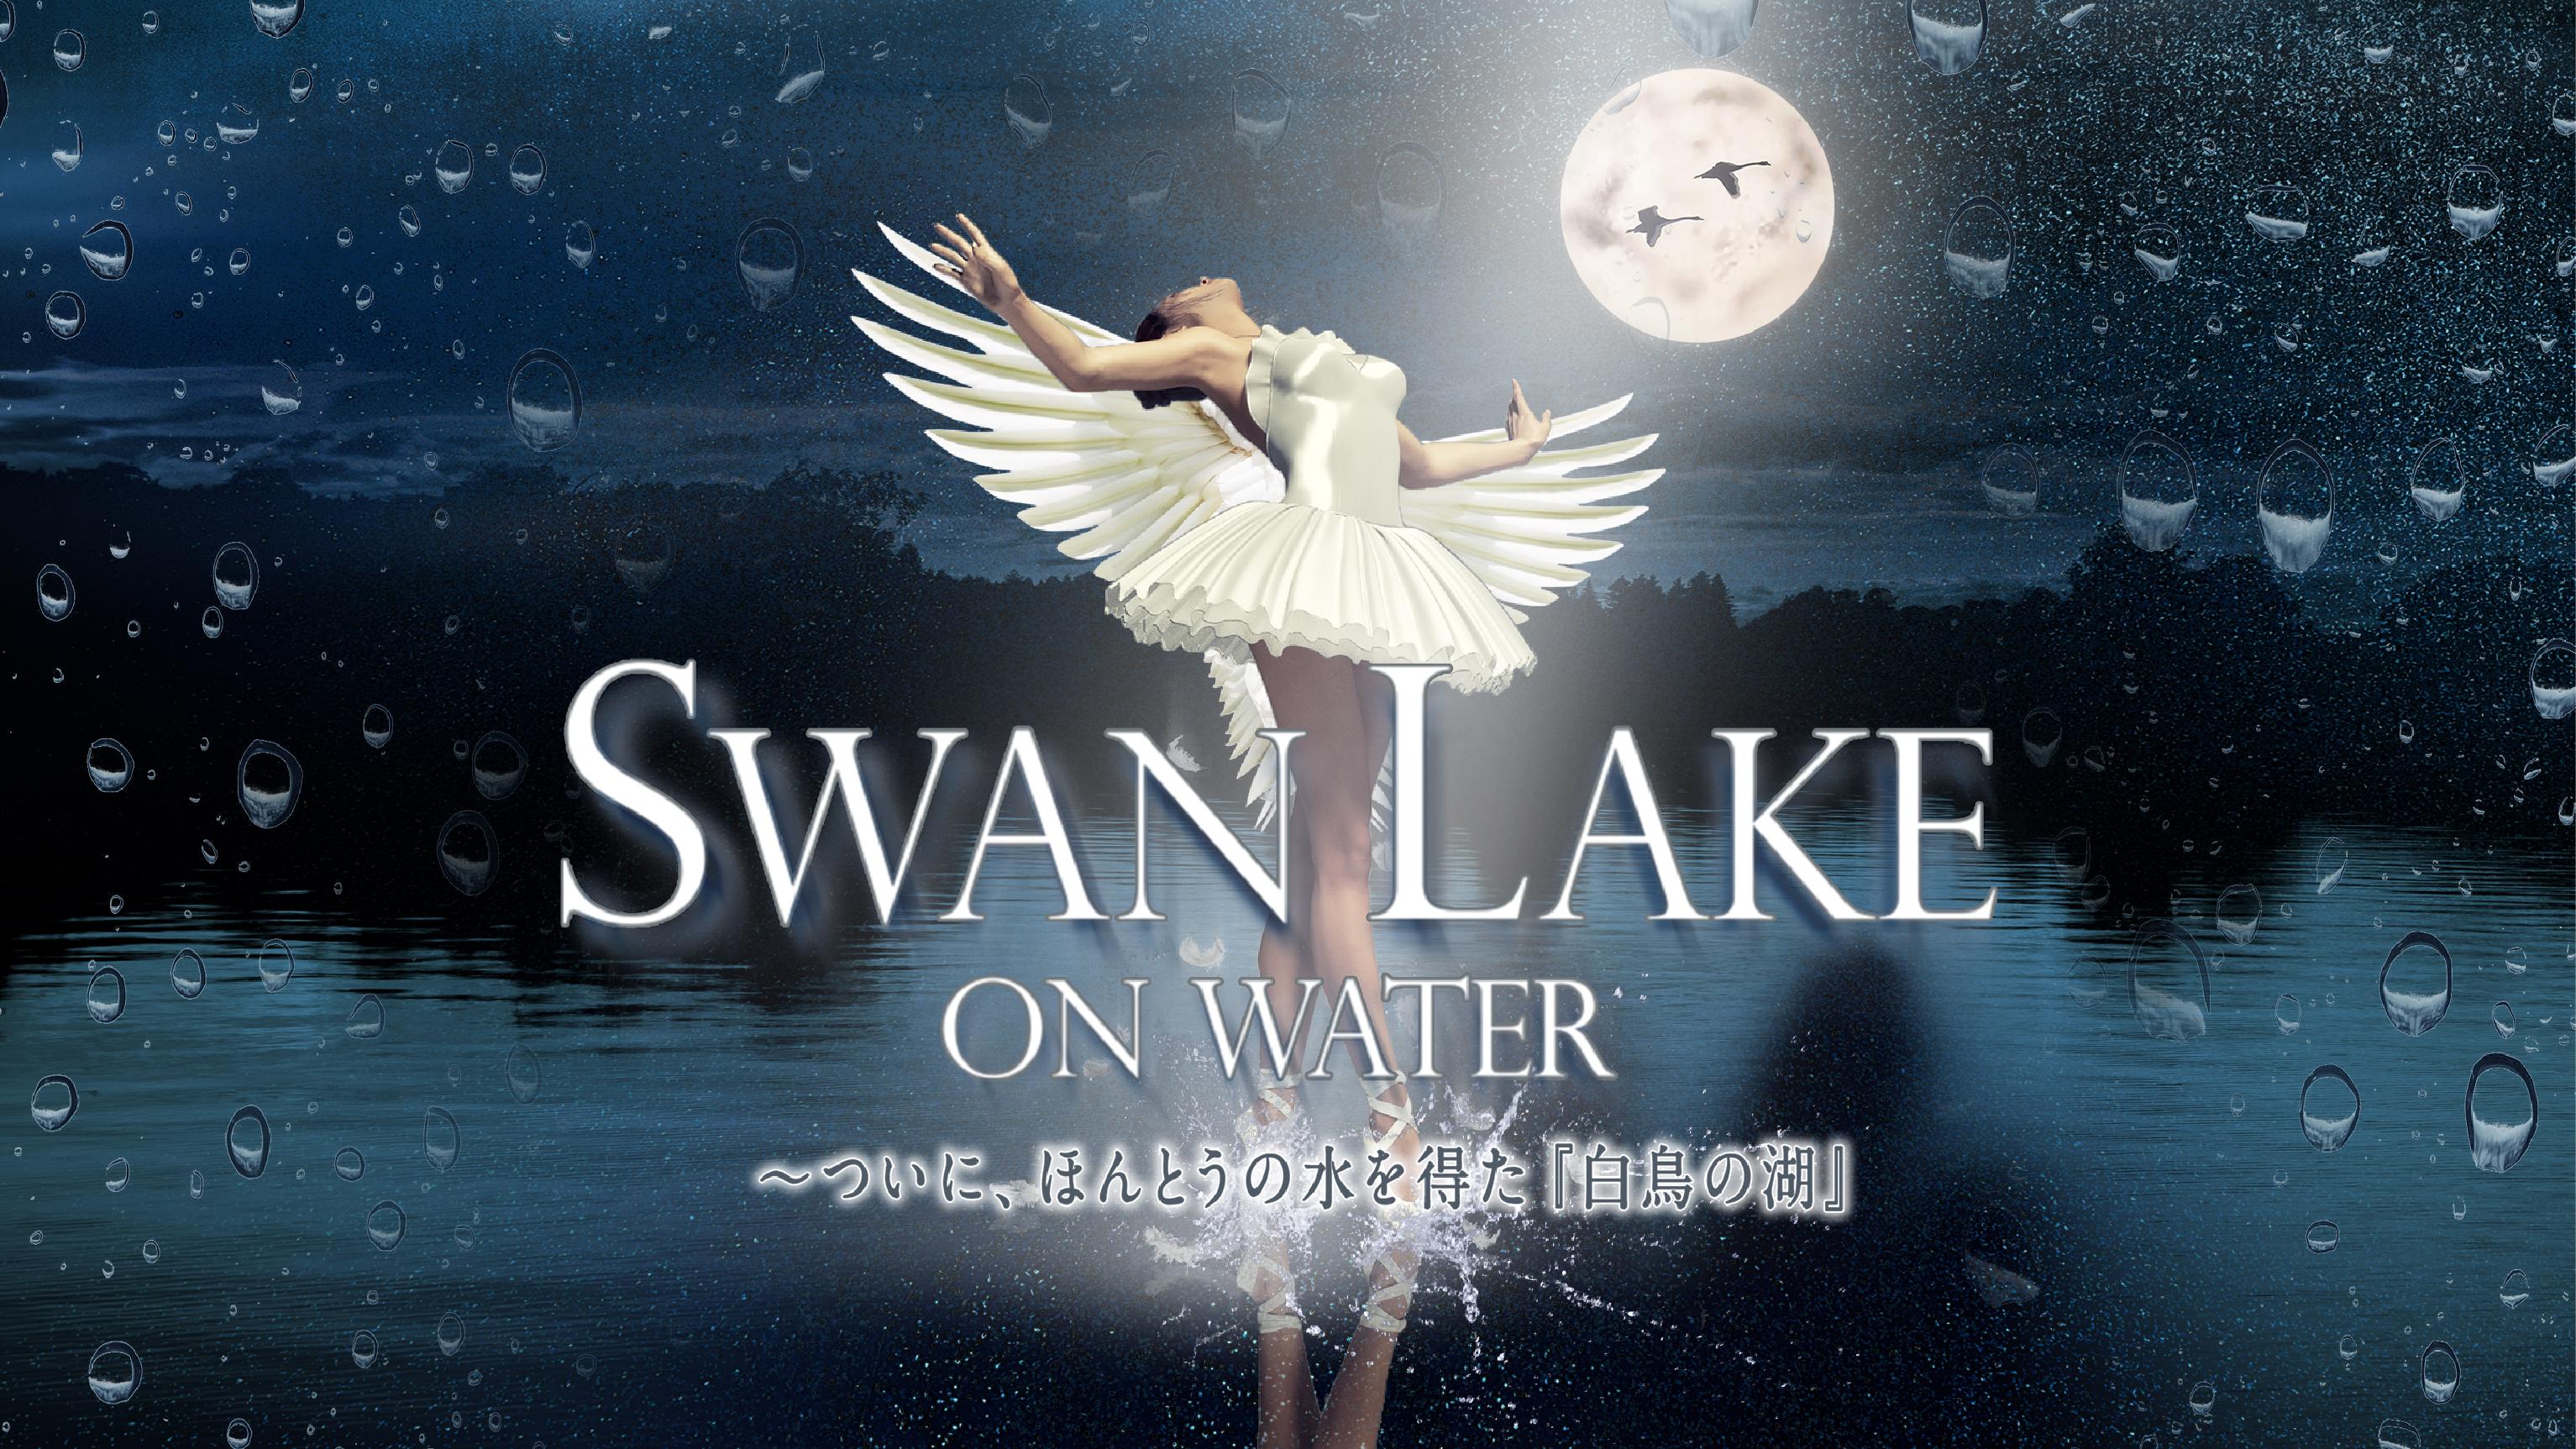 SWAN LAKE ON WATER  〜ついに、ほんとうの水を得た『白鳥の湖』